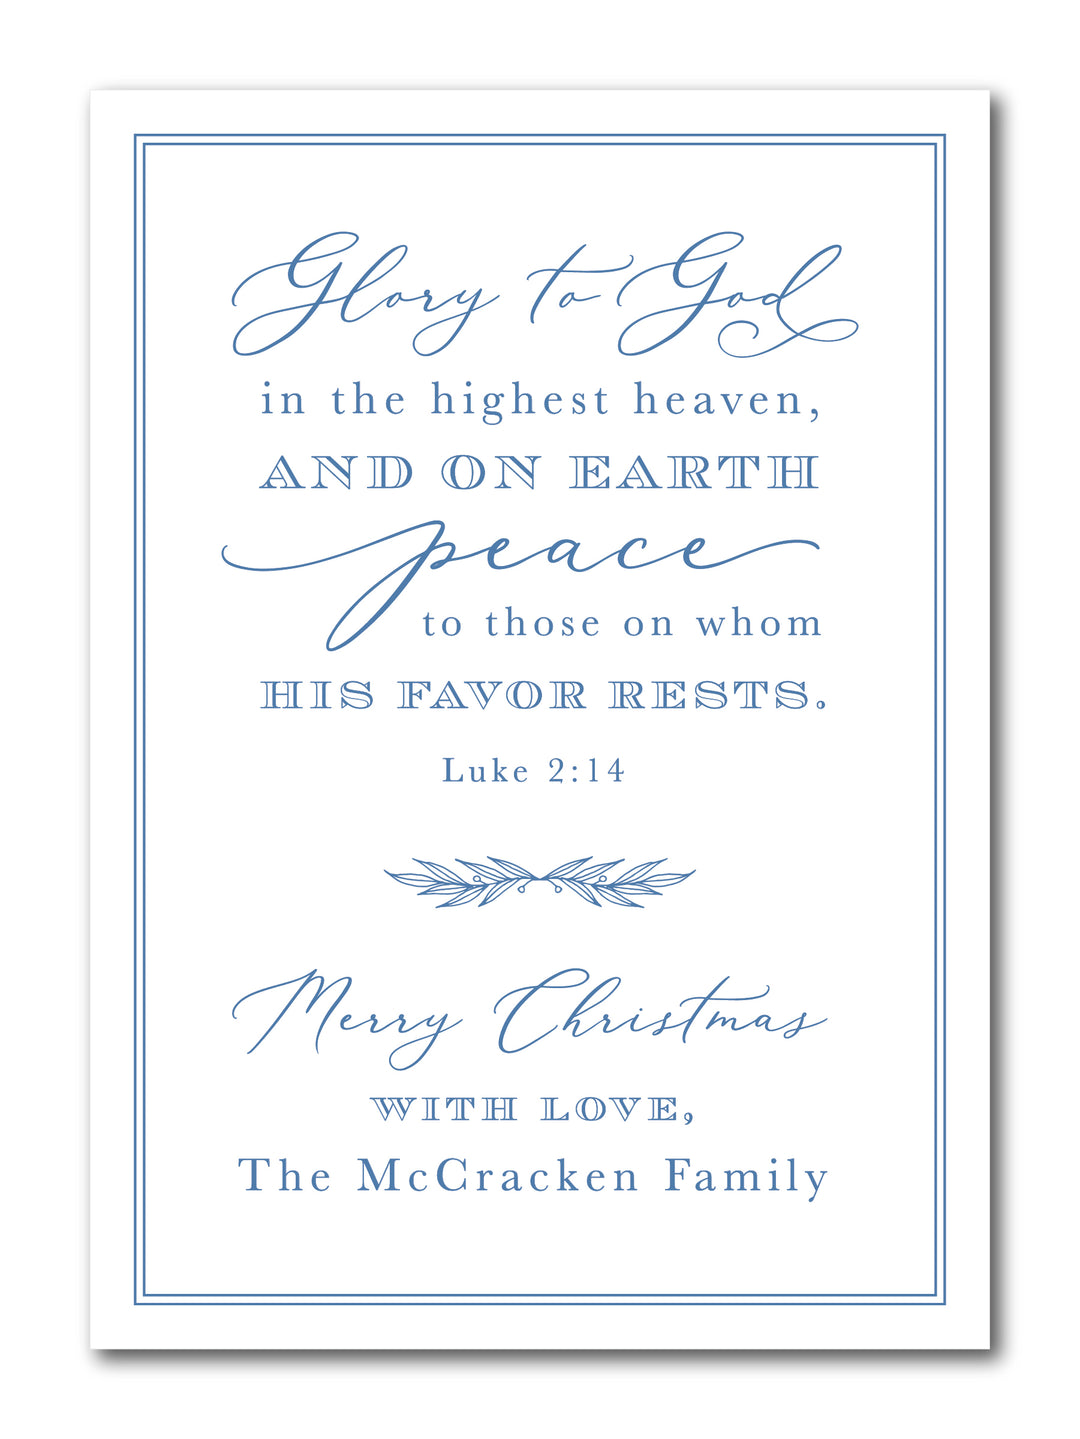 The McCracken Christmas Card